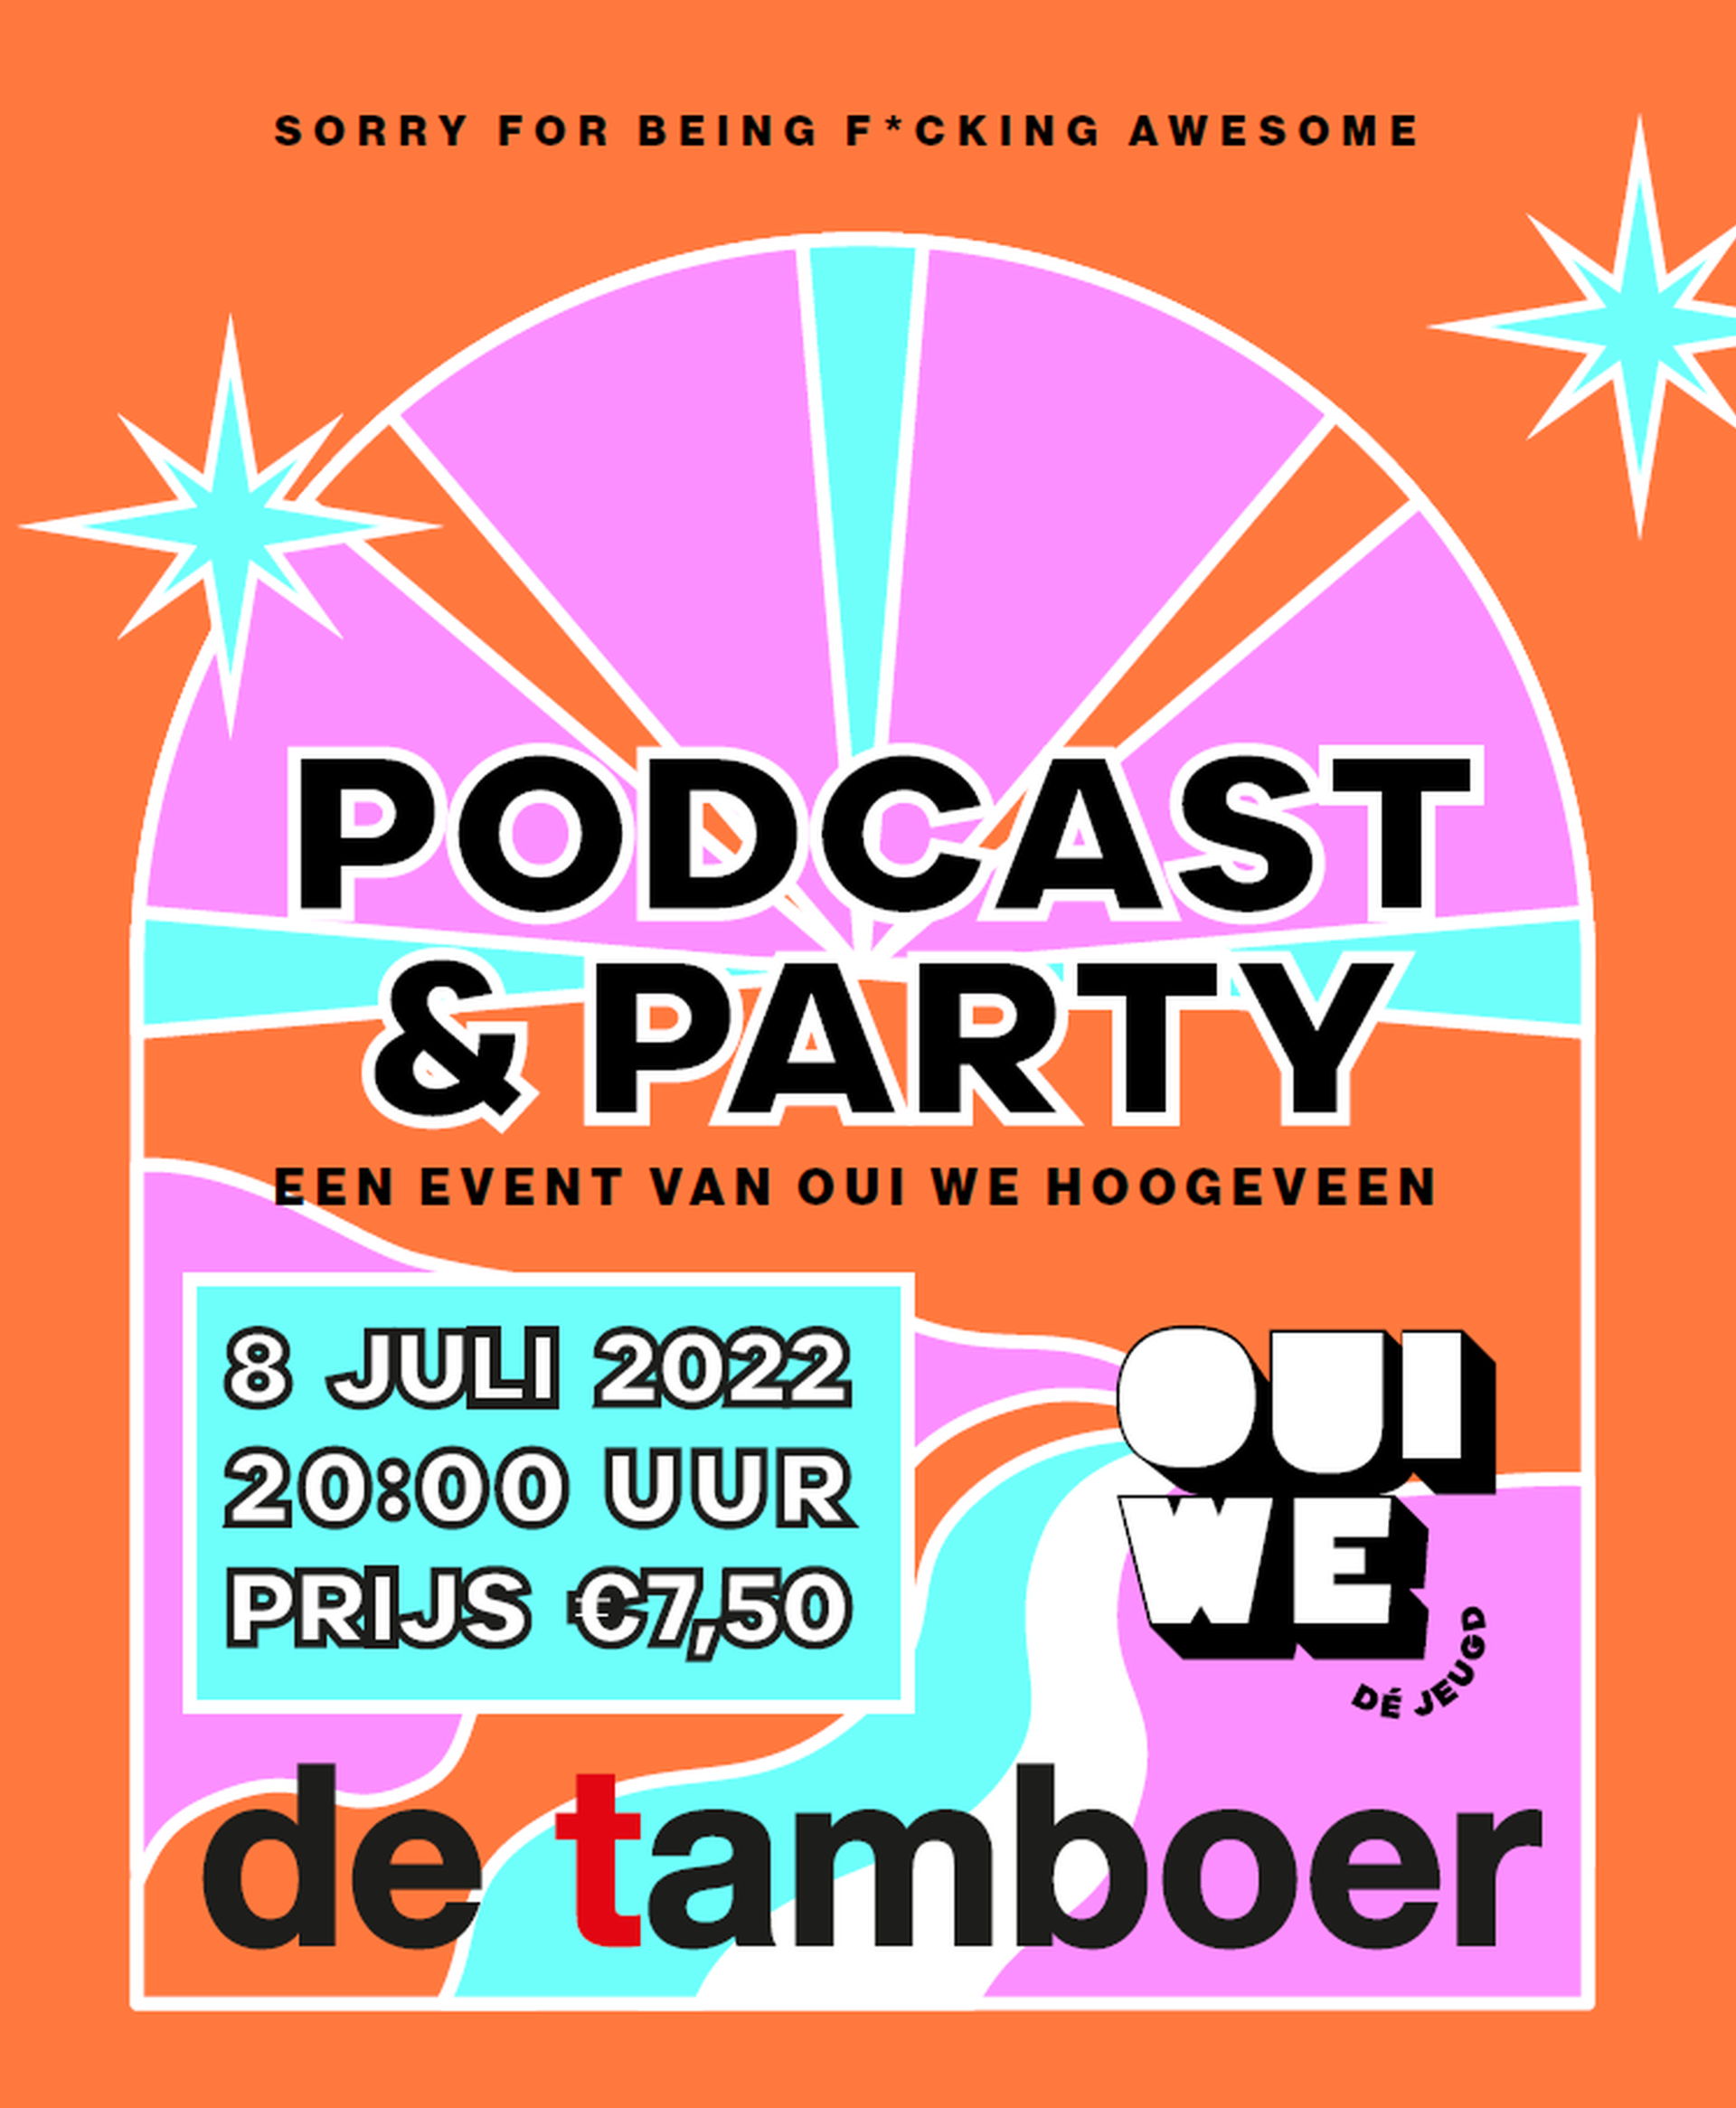 Podcast & Party - Oui We Hoogeveen - 2022 in De Tamboer